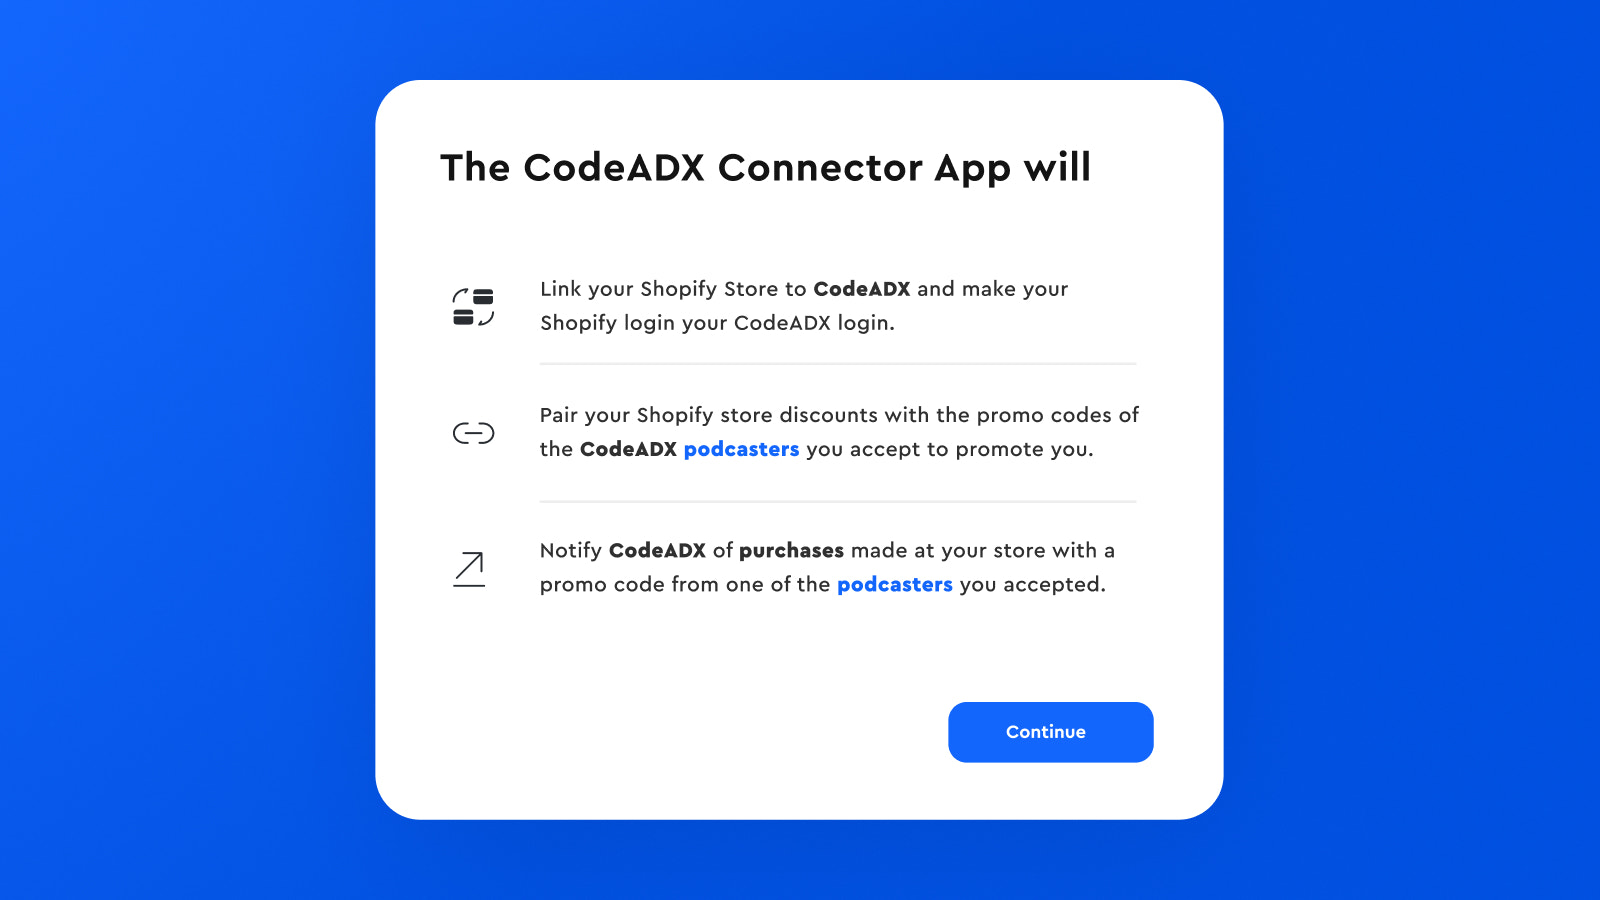 Hvad vil CodeADX Connector App gøre